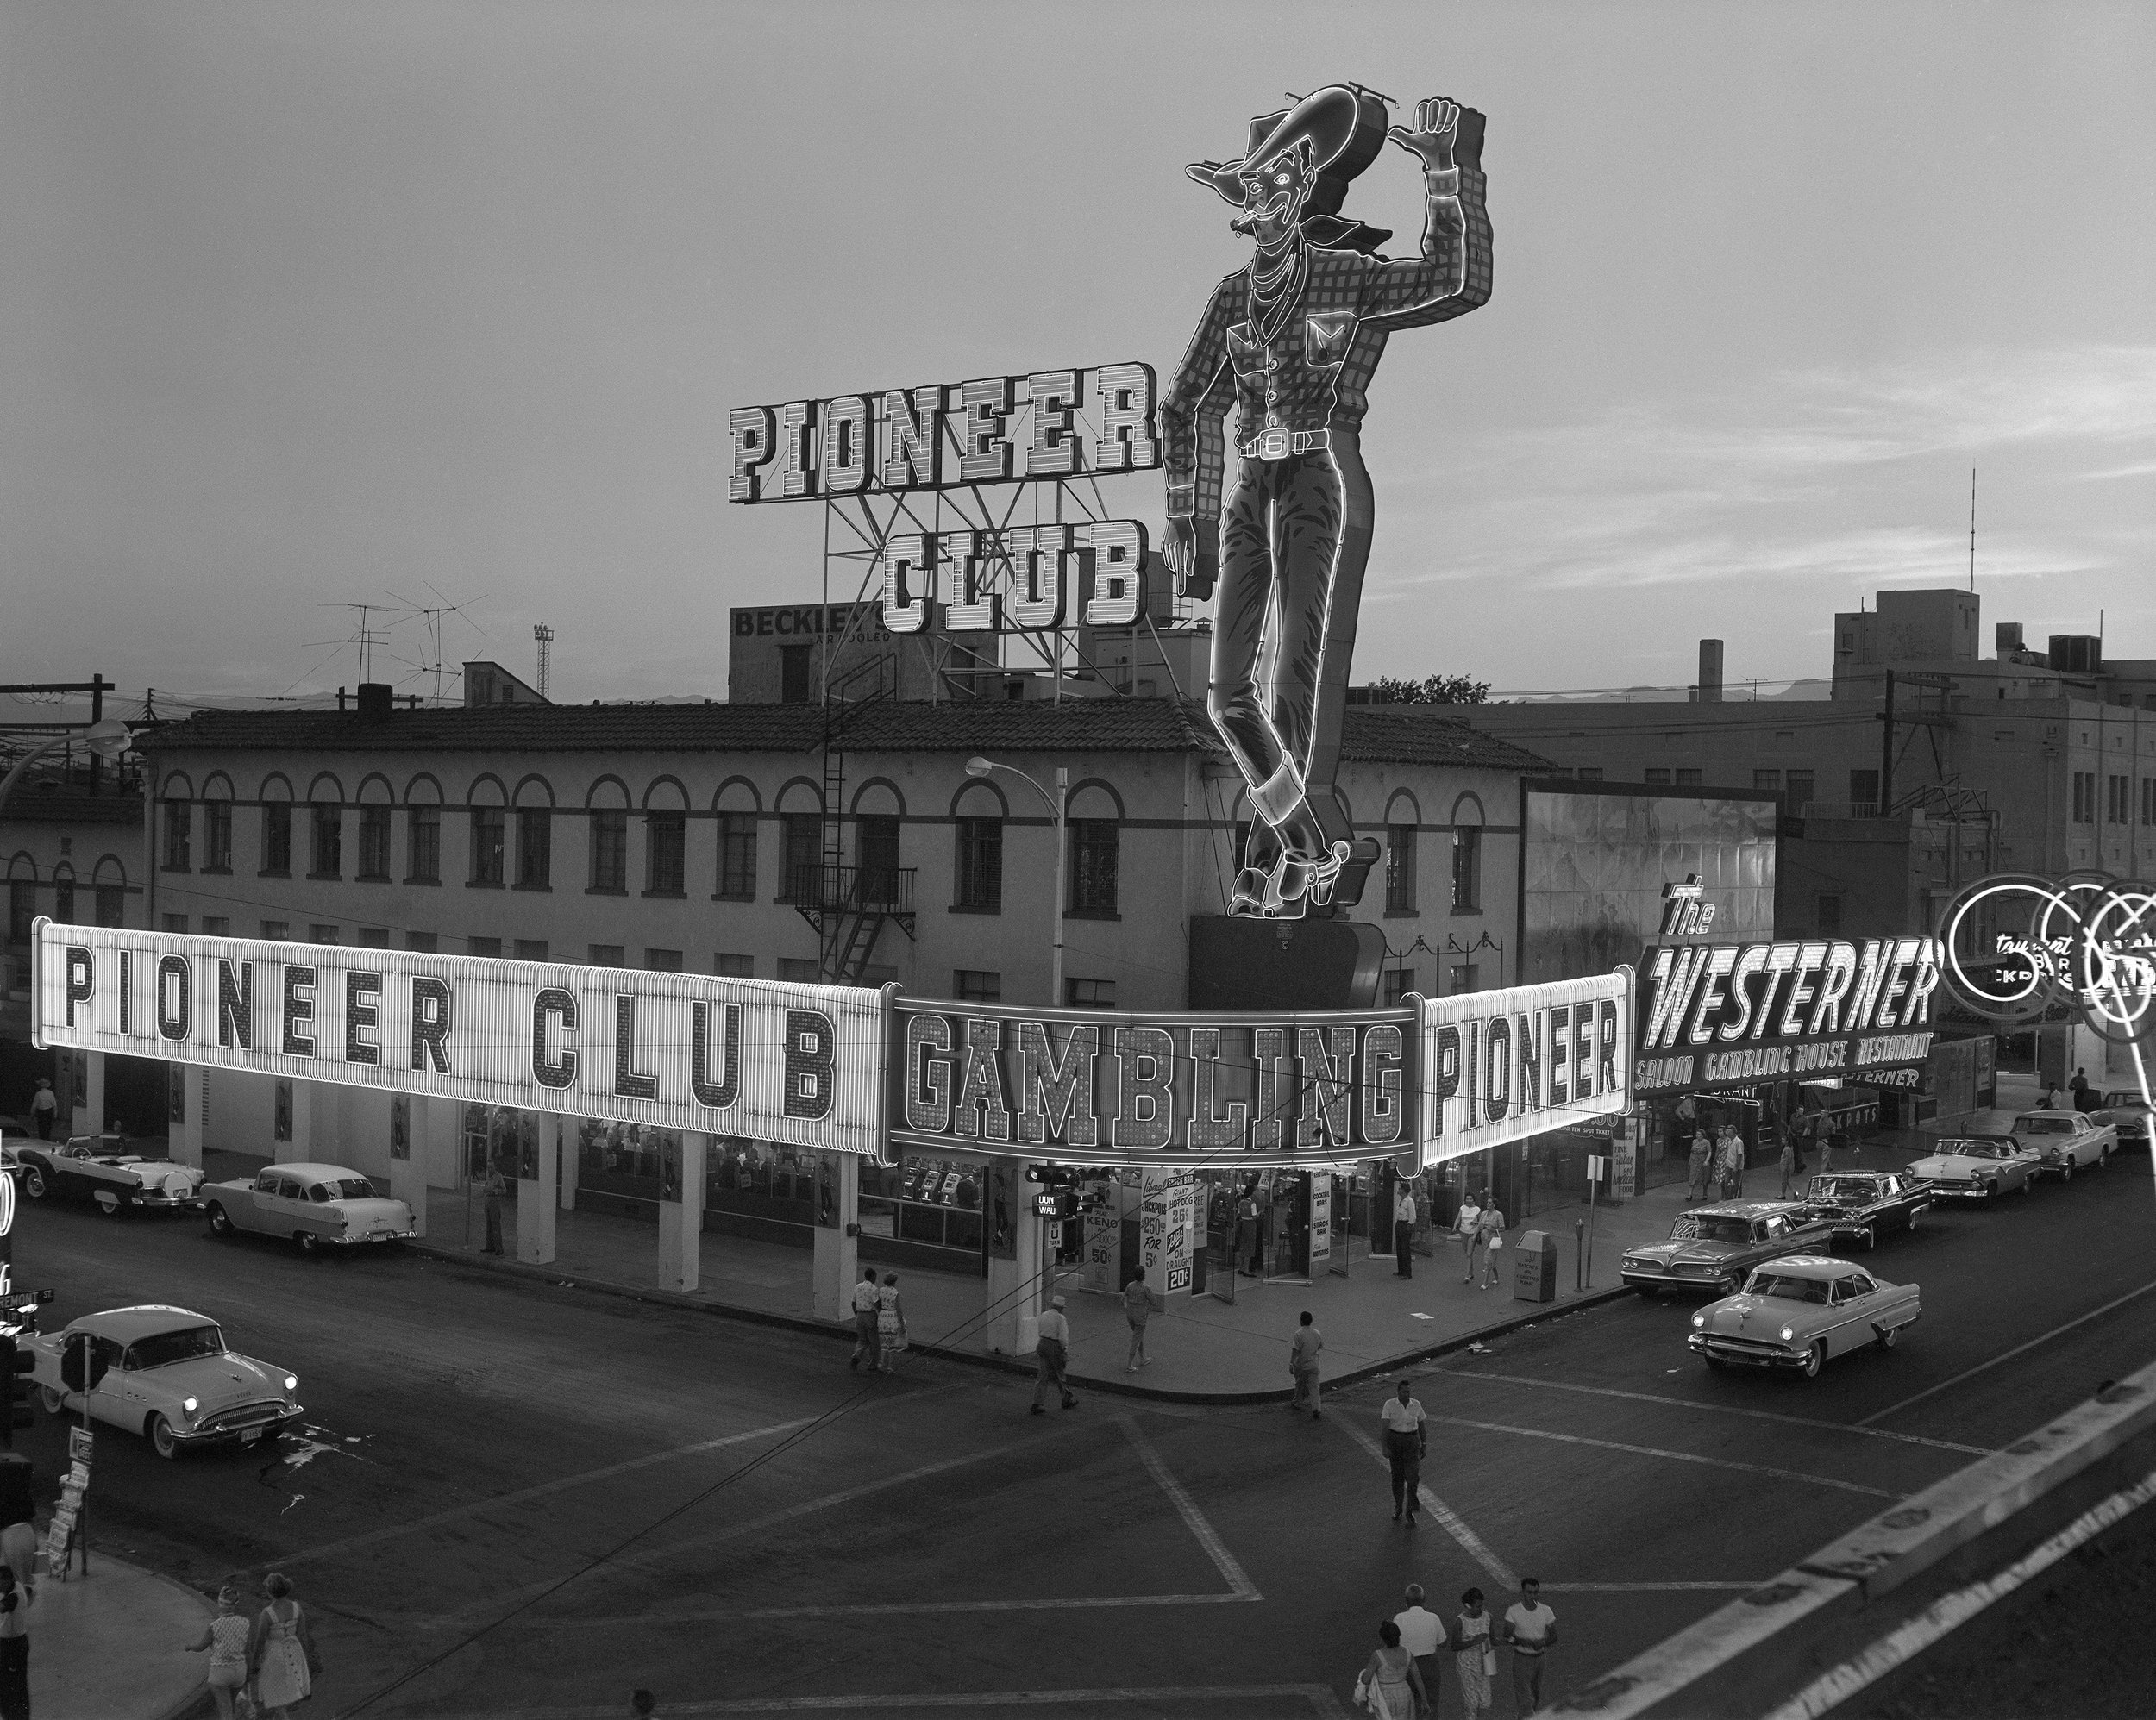 Las Vegas Convention Center in 1959